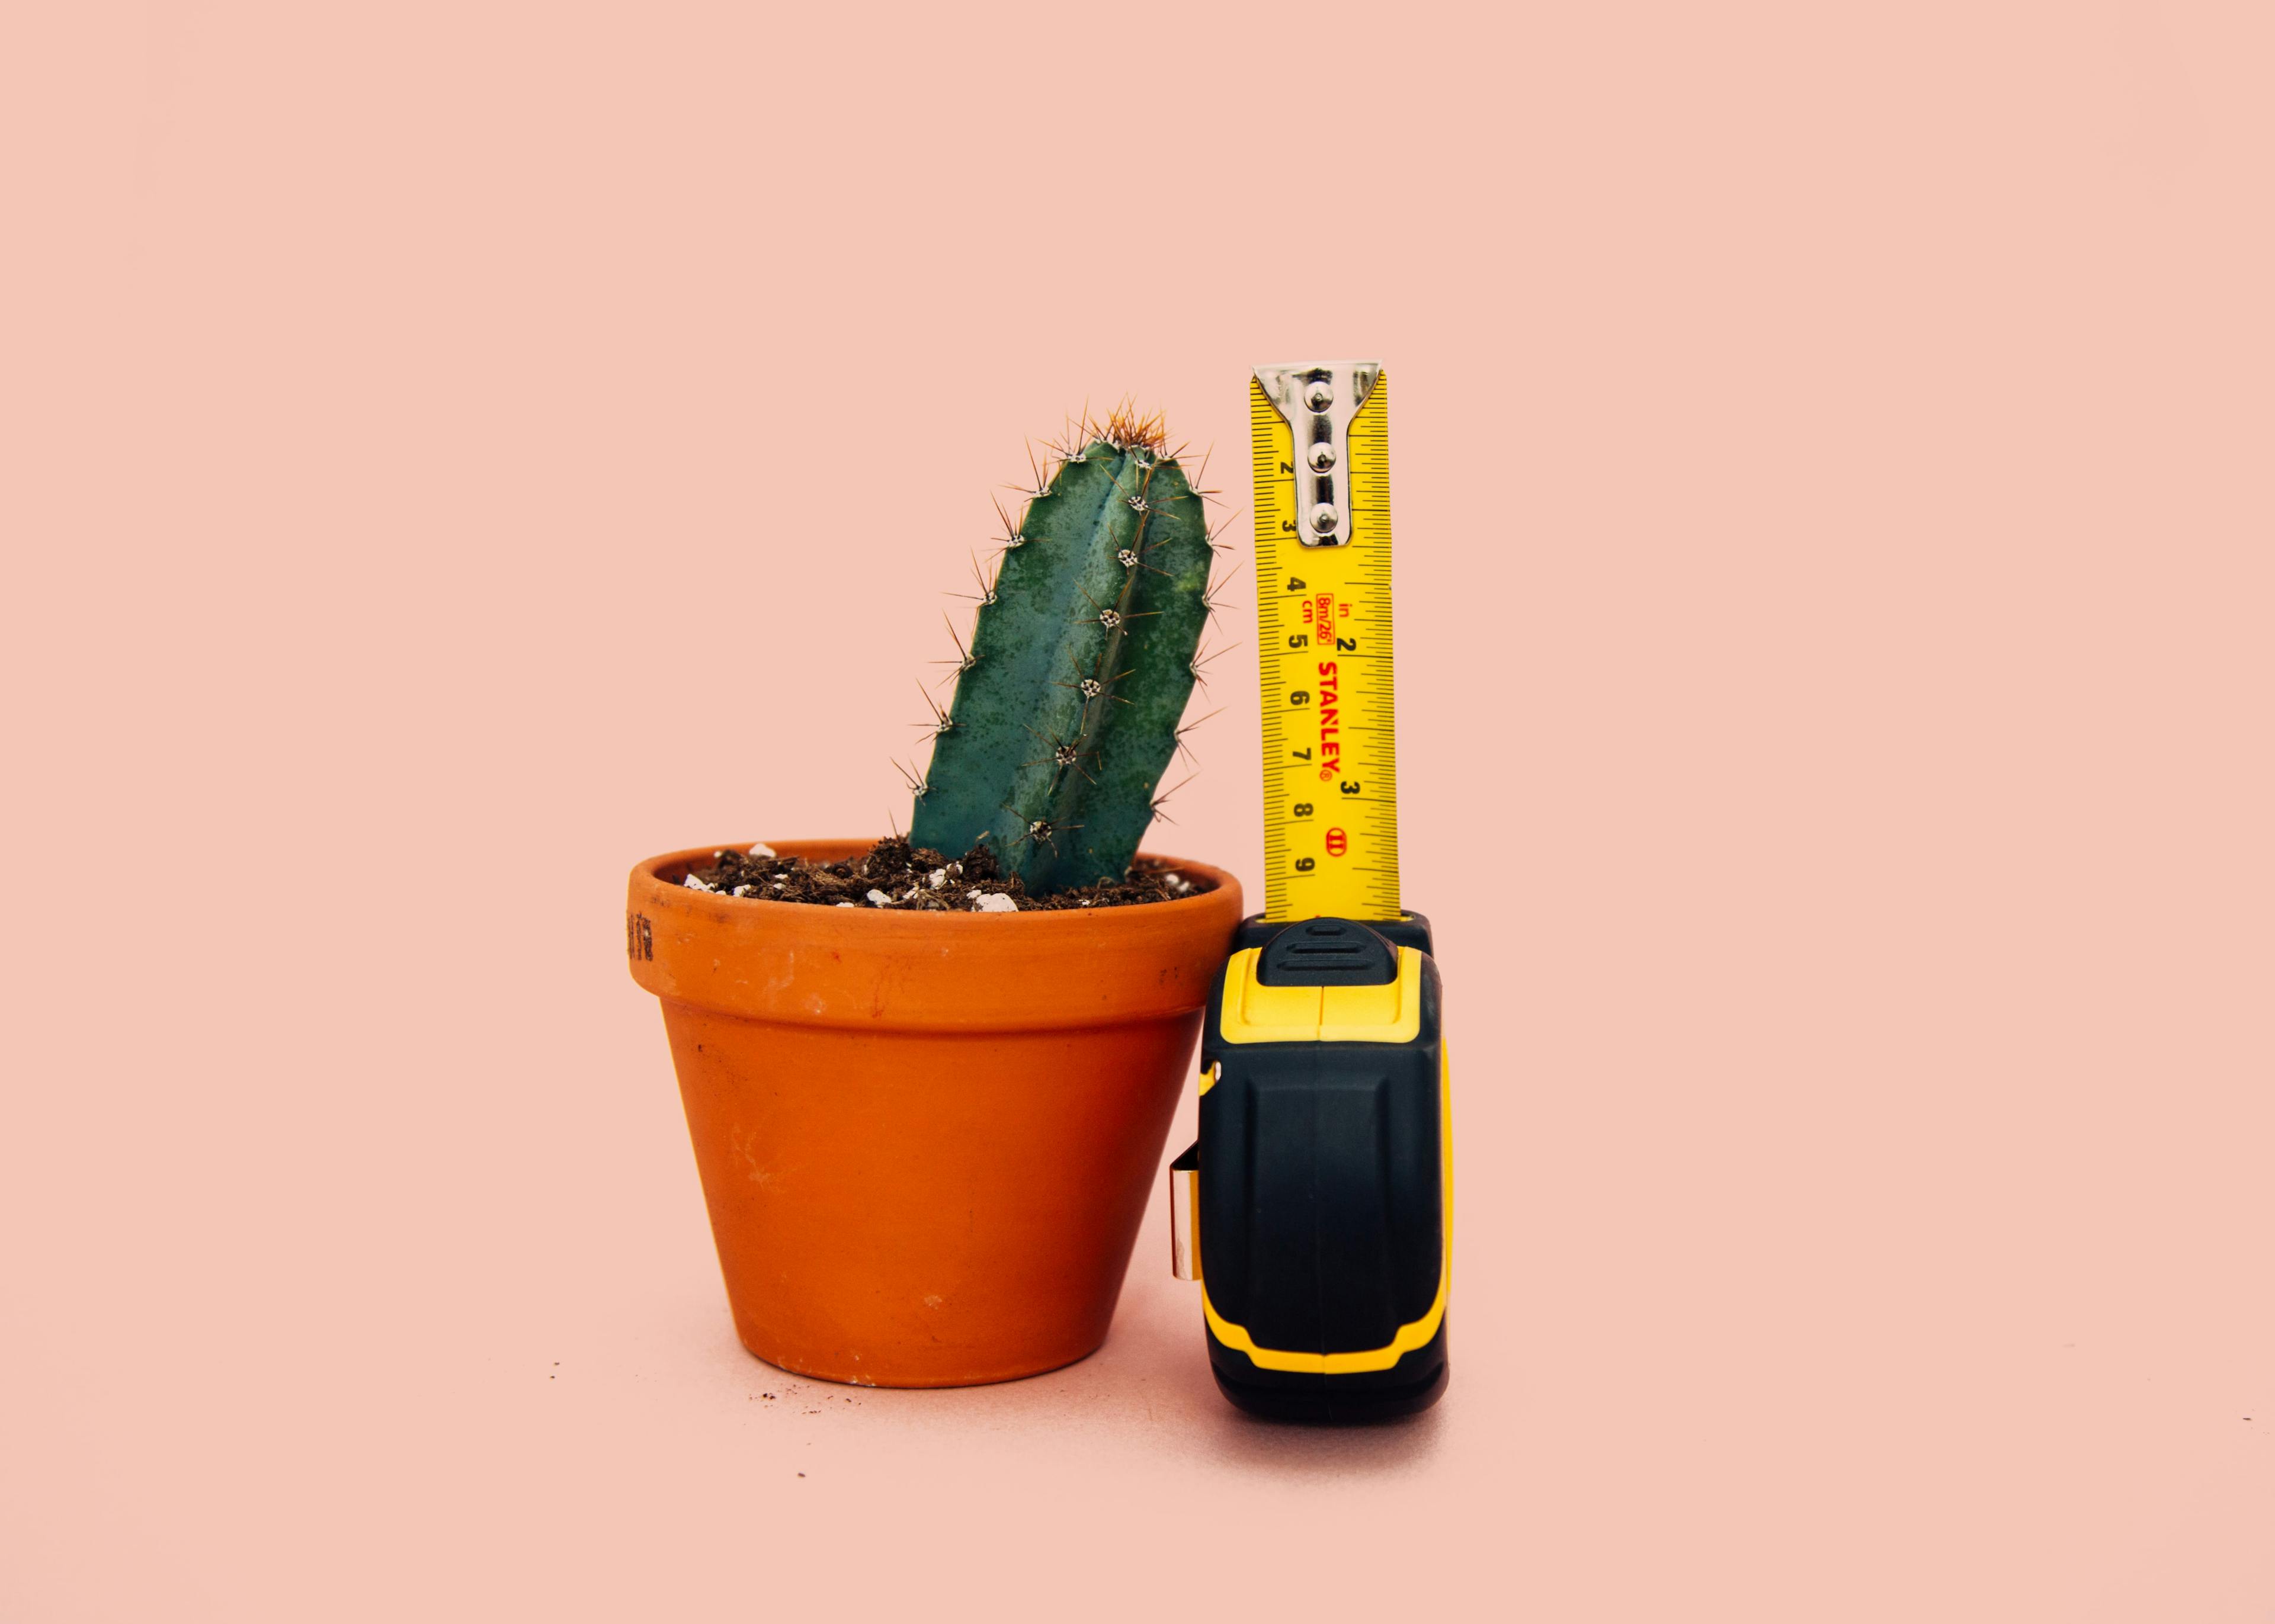 Measuing a cactus plant